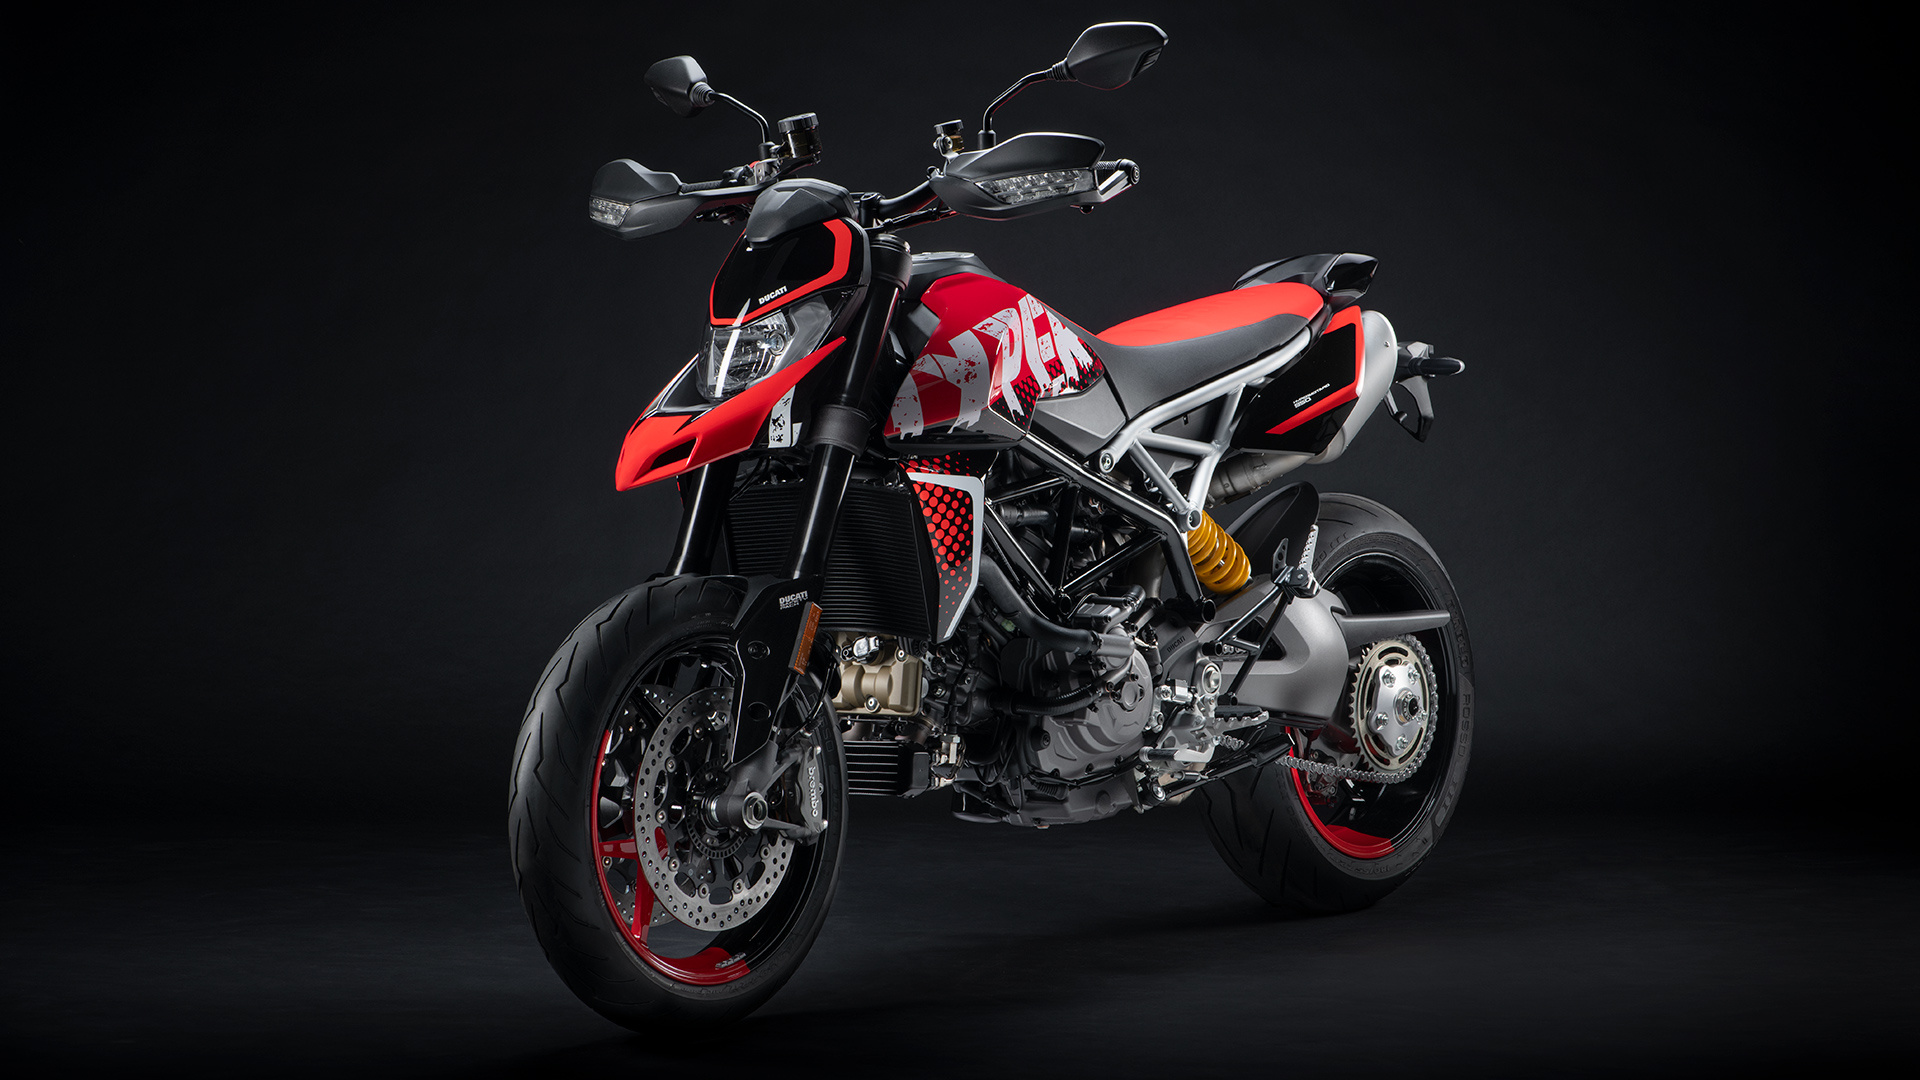 Ducati Hypermotard 950, 2021 model, Motorrad center showcase, Thrilling performance, 1920x1080 Full HD Desktop